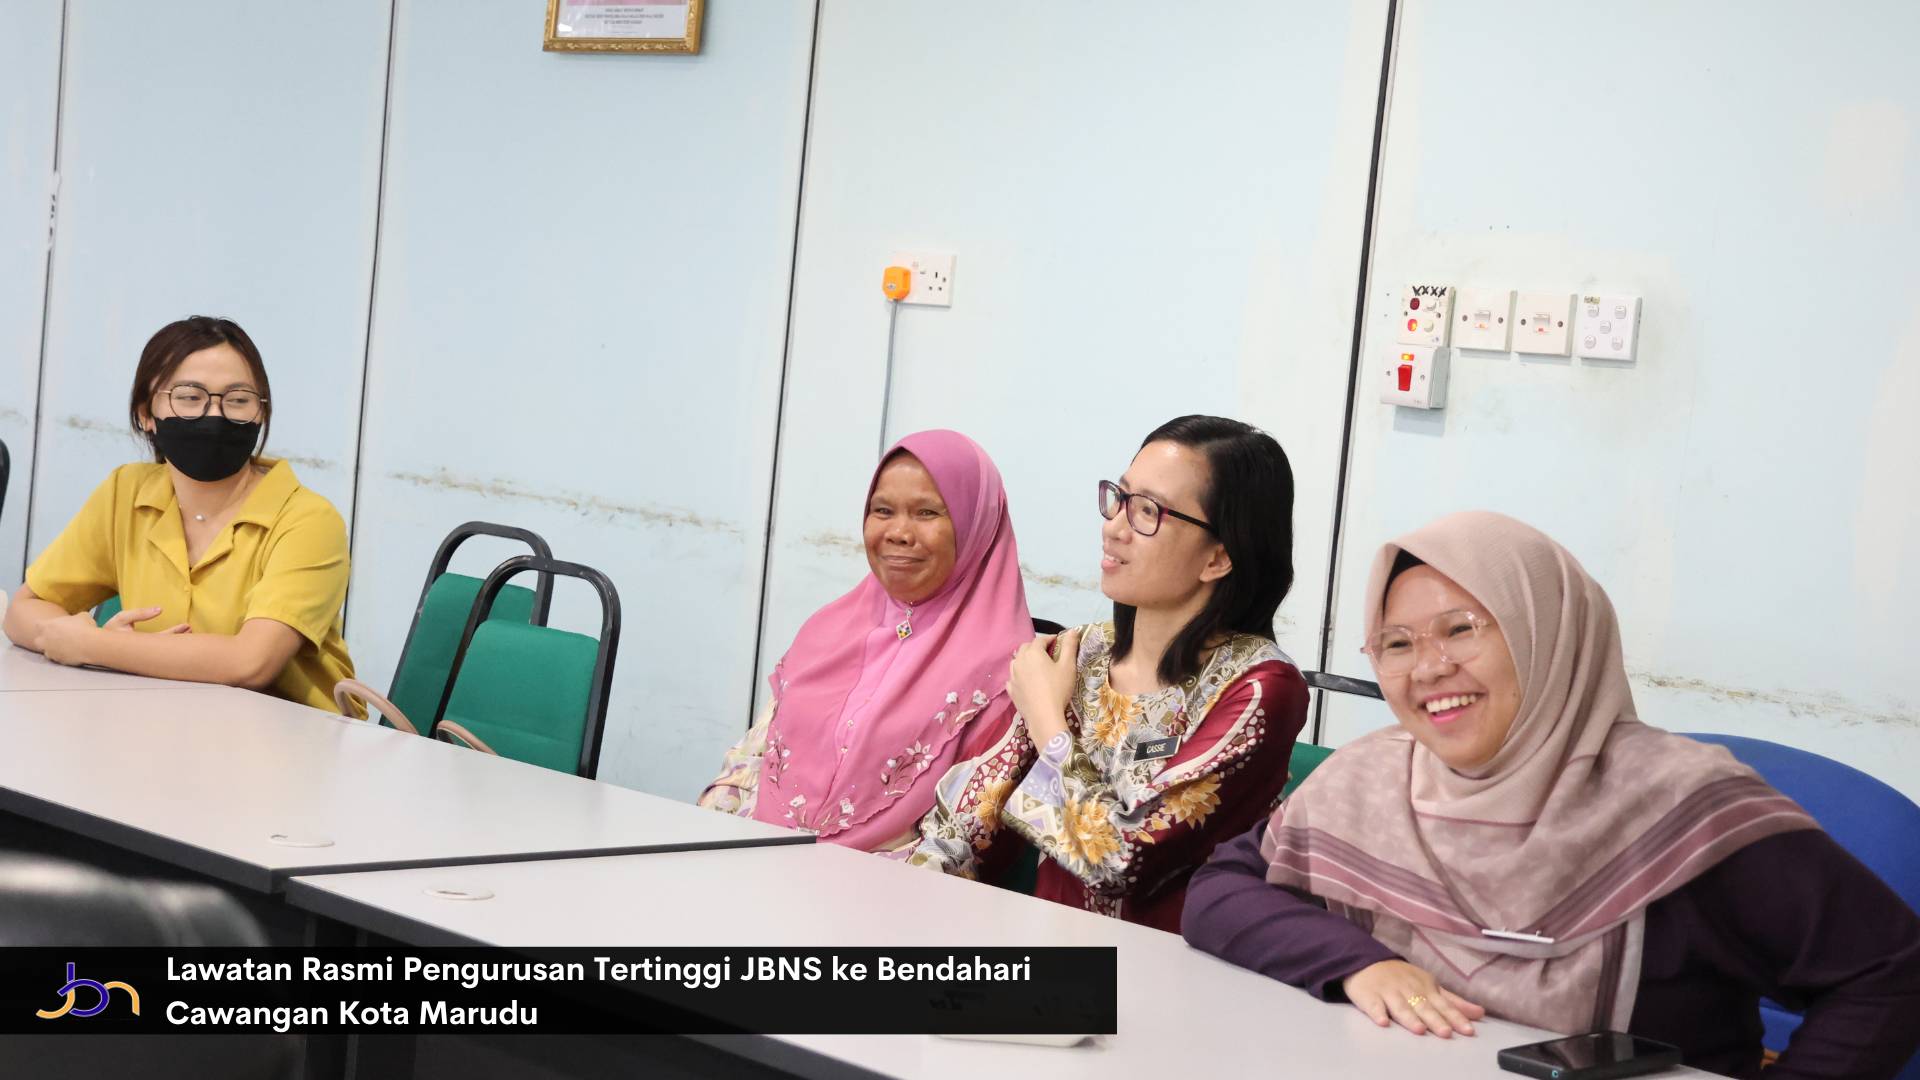 Lawatan Rasmi Pengurusan Tertinggi JBNS ke Bendahari Cawangan Kota Marudu